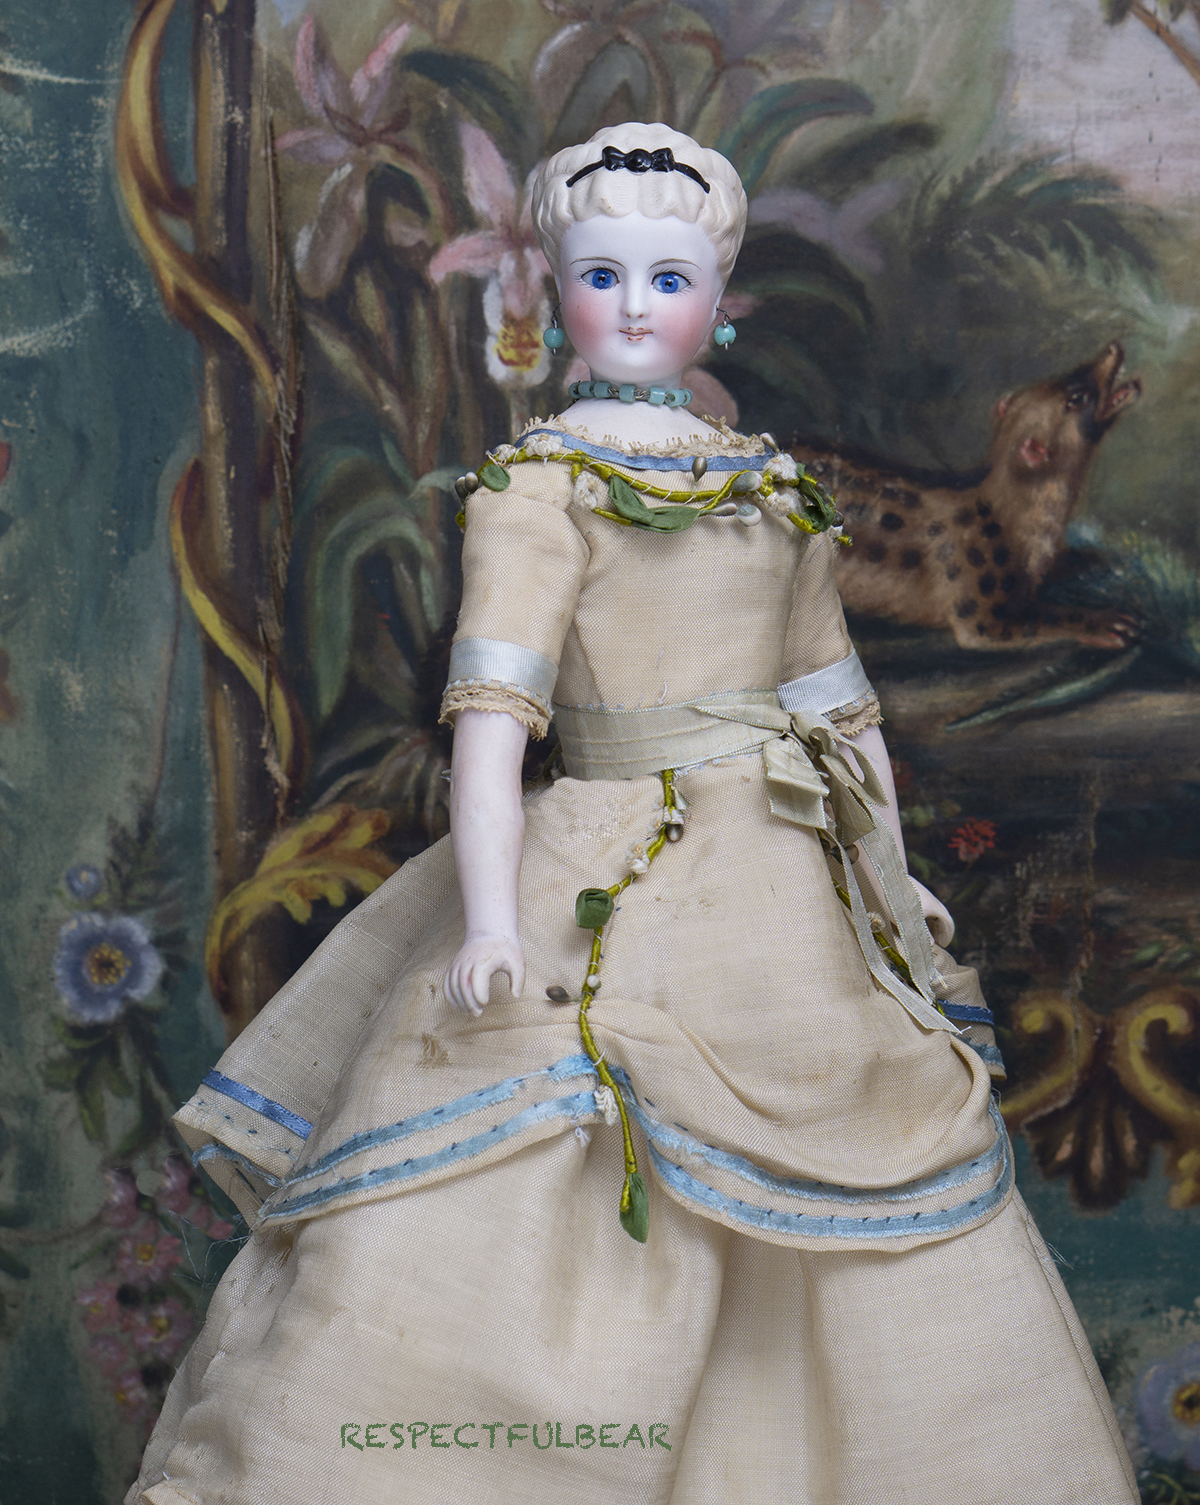 36см Немецкая кукла - Леди от Simon and Halbig, в оригинальном платье 1870е годы